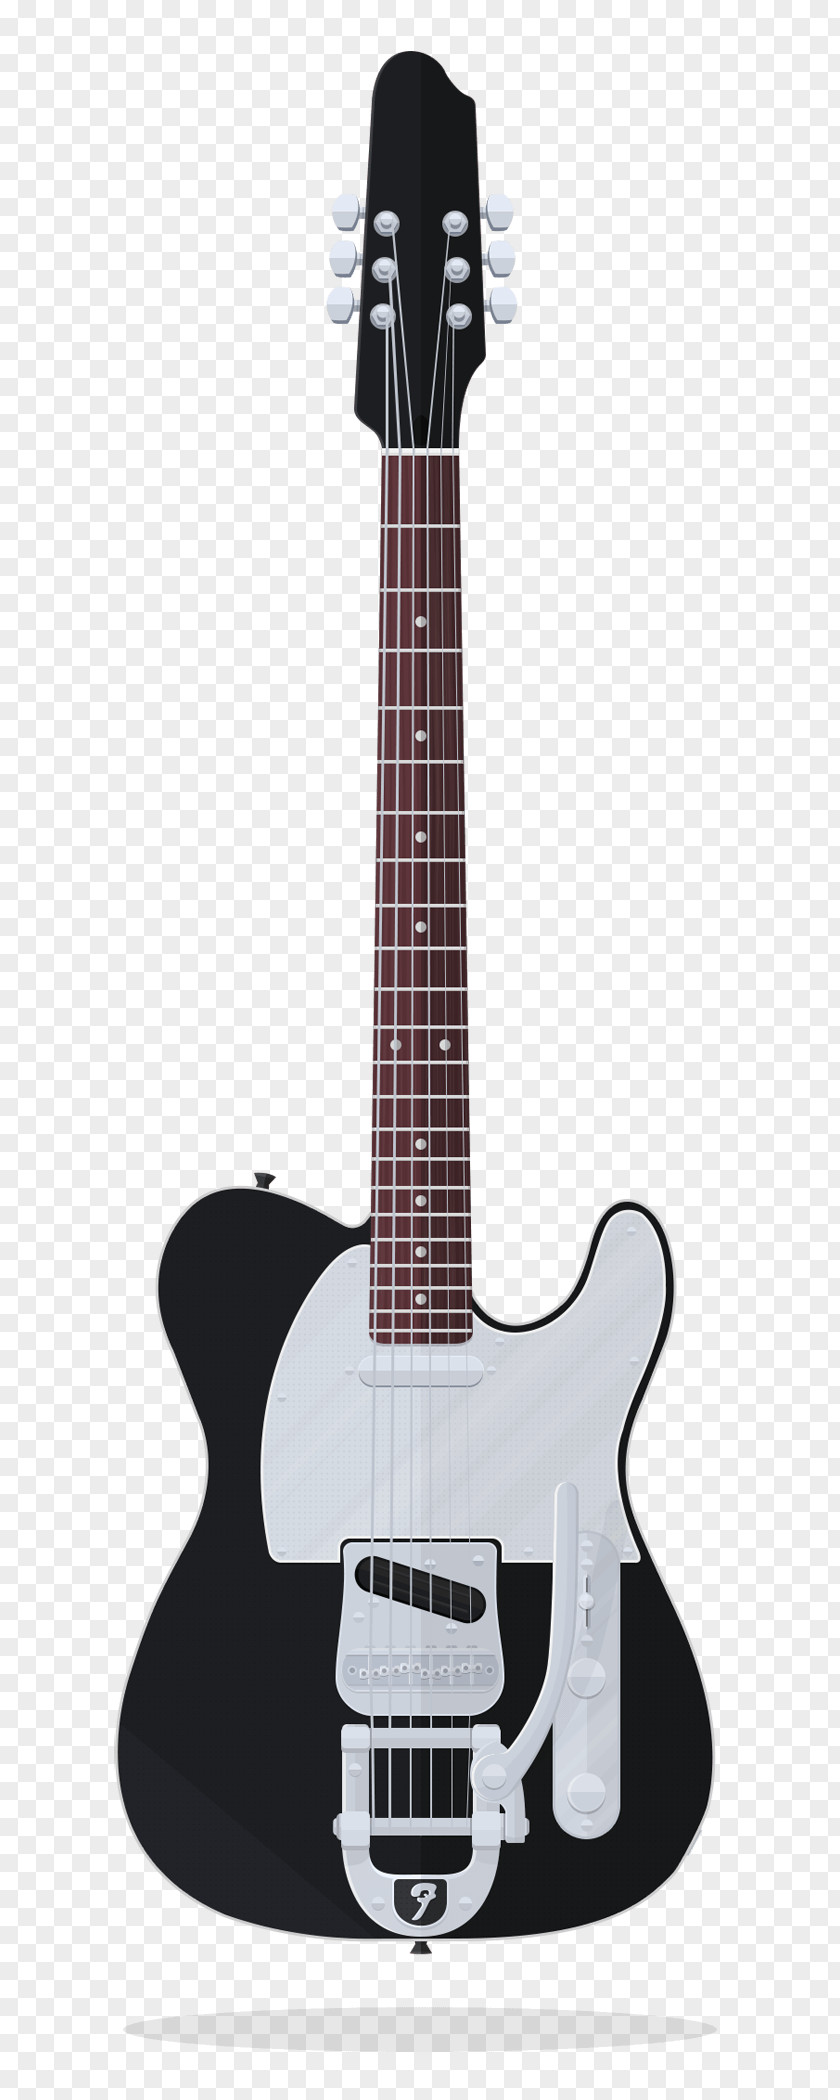 Fender Telecaster J5 Stratocaster Guitar Musical Instruments PNG